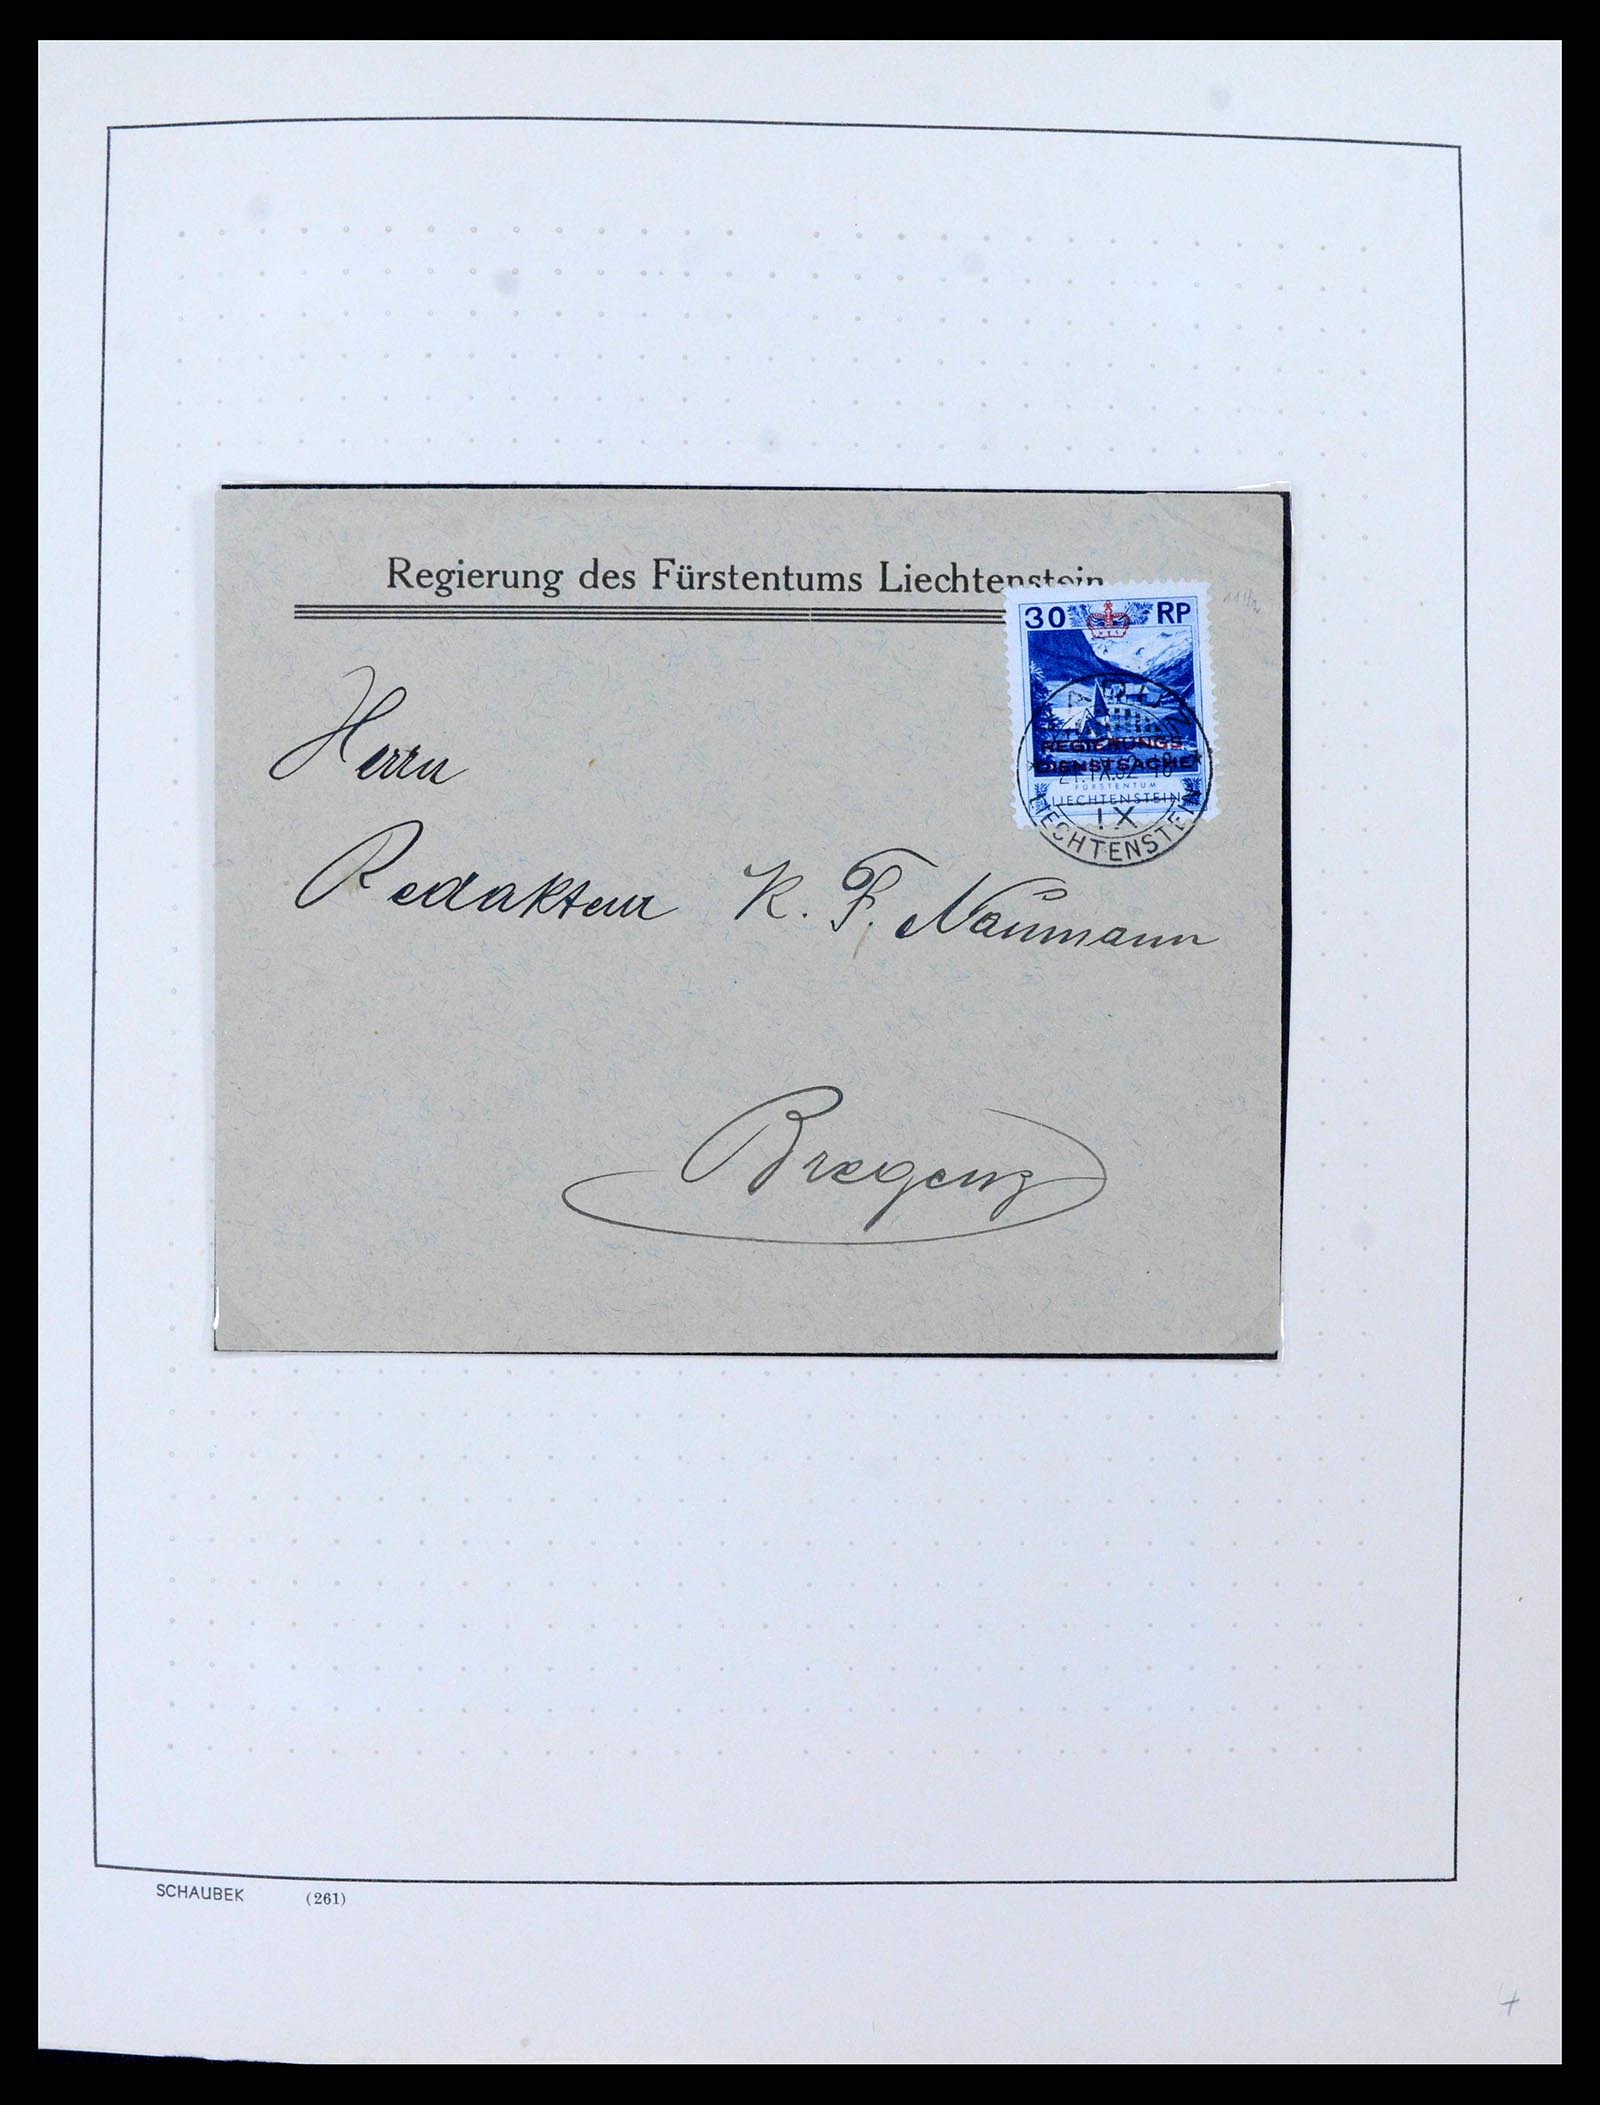 38204 0003 - Stamp collection 38204 Liechtenstein service covers 1932-1989.